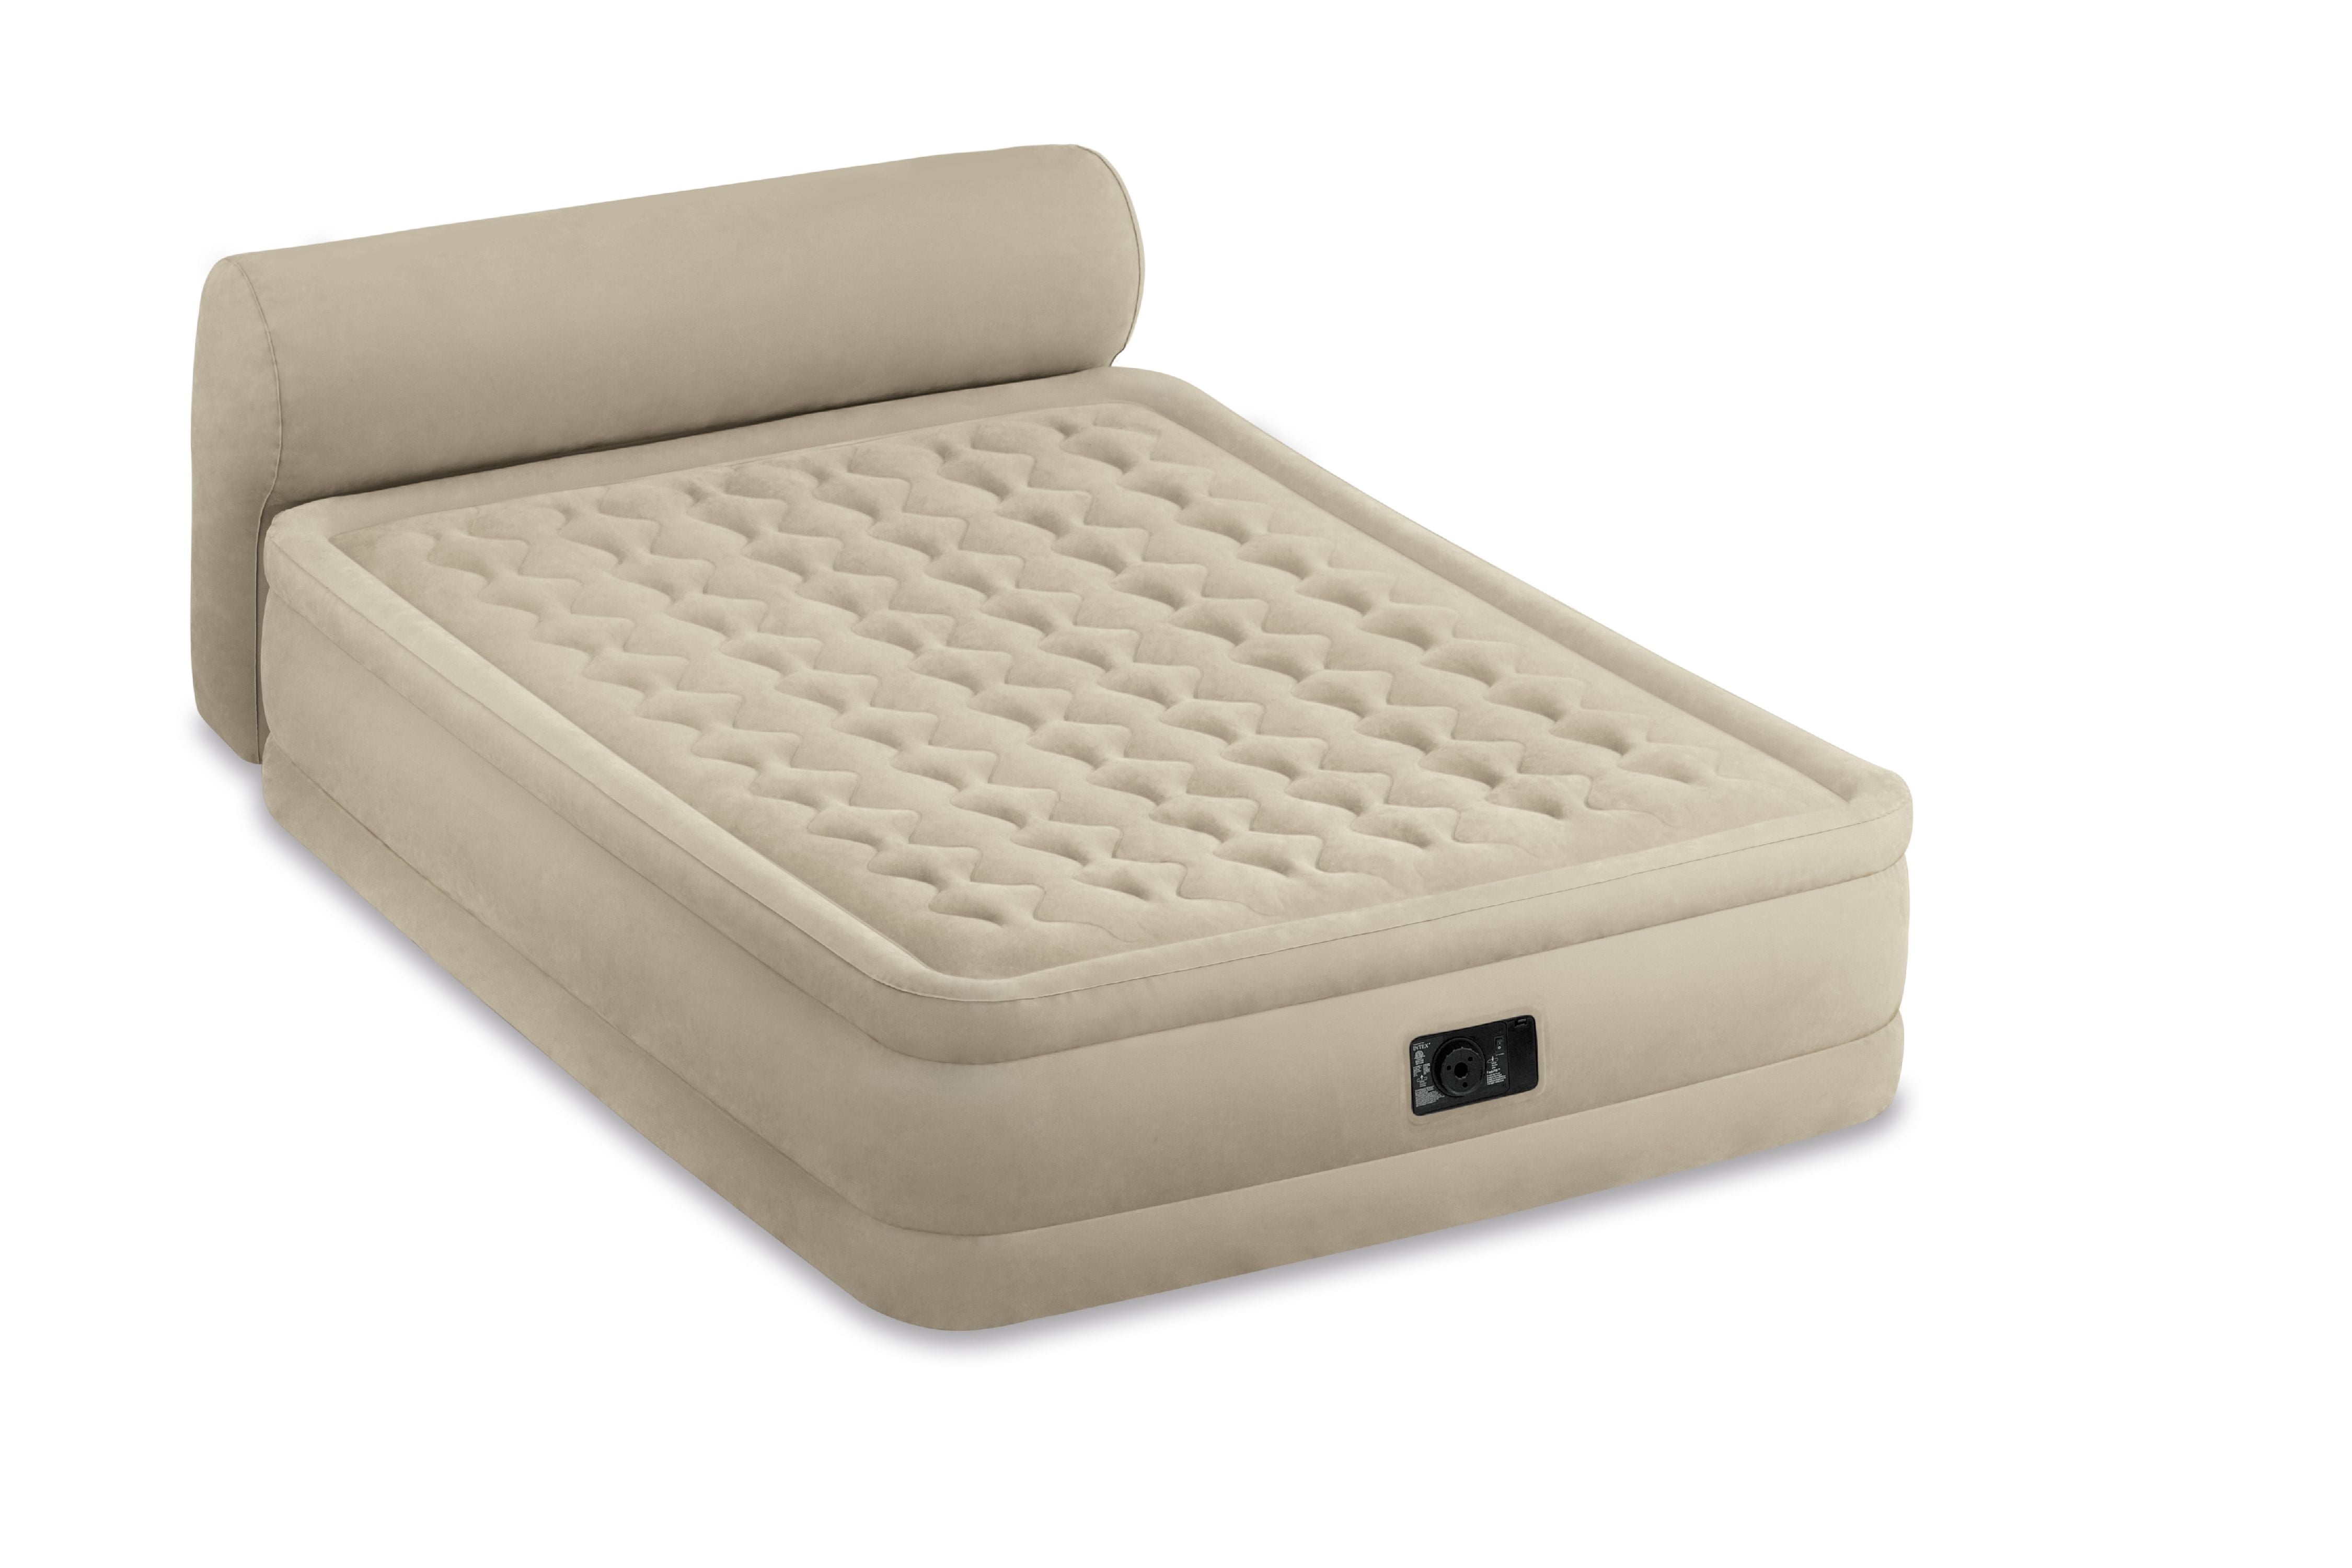 Intex 18 Queen Dura Beam Ultra Plush, Portable Bed Frame For Air Mattress